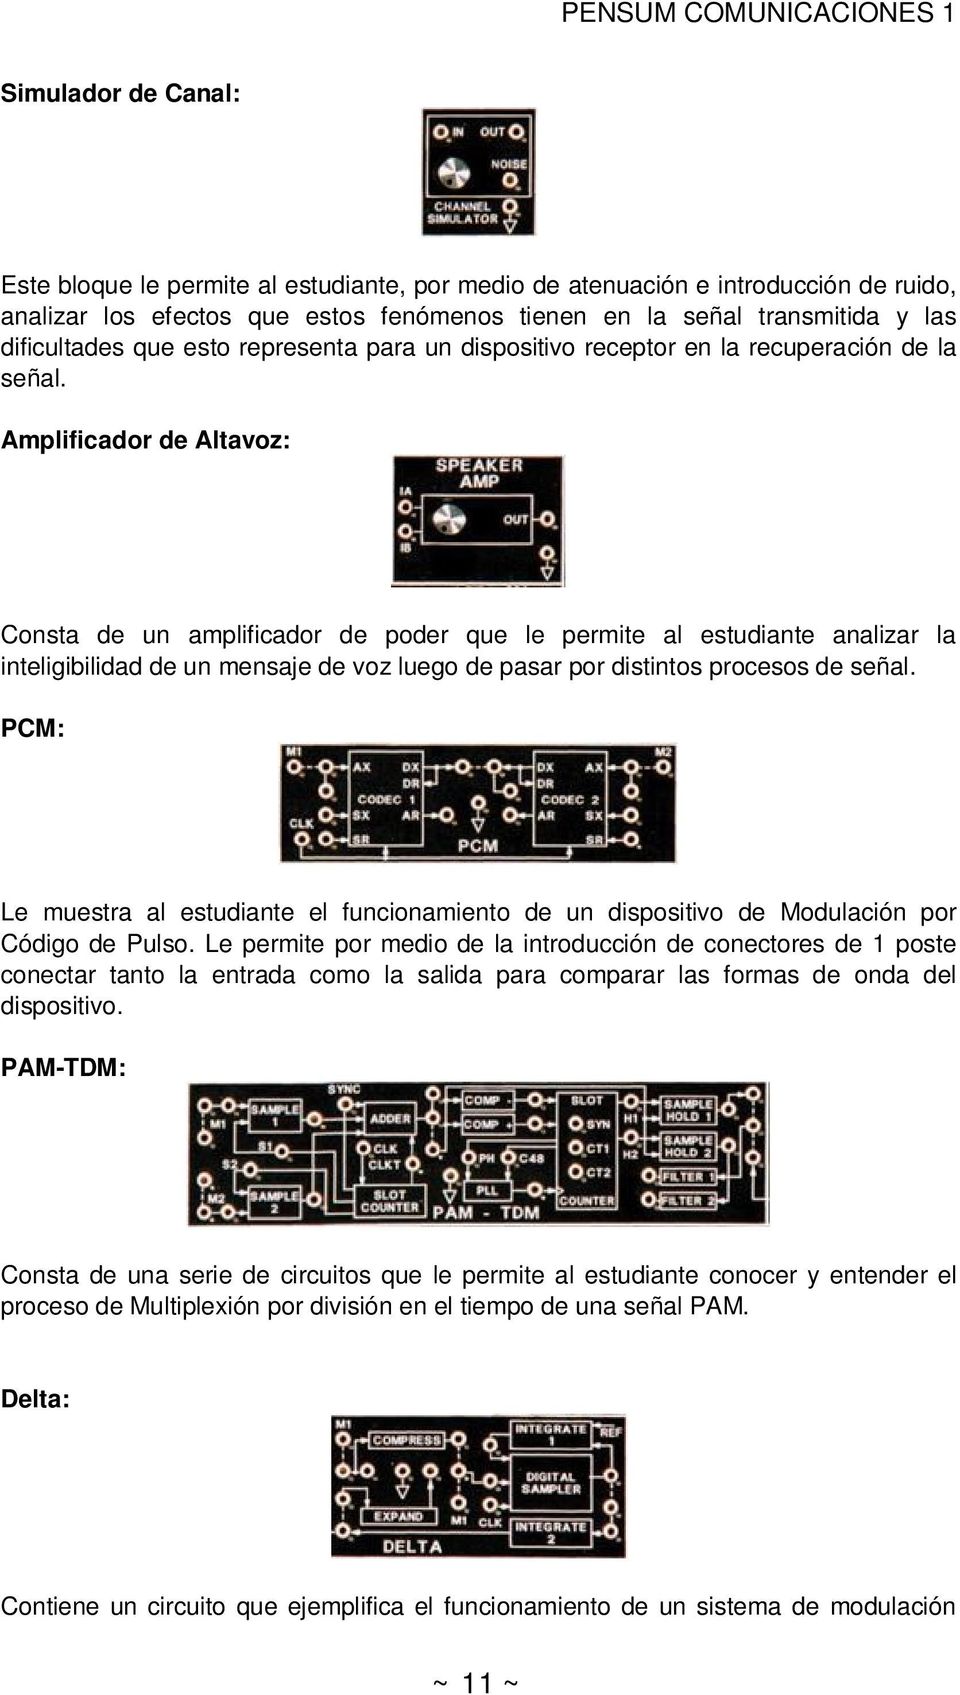 Amplificador de Altavoz: Consta de un amplificador de poder que le permite al estudiante analizar la inteligibilidad de un mensaje de voz luego de pasar por distintos procesos de señal.